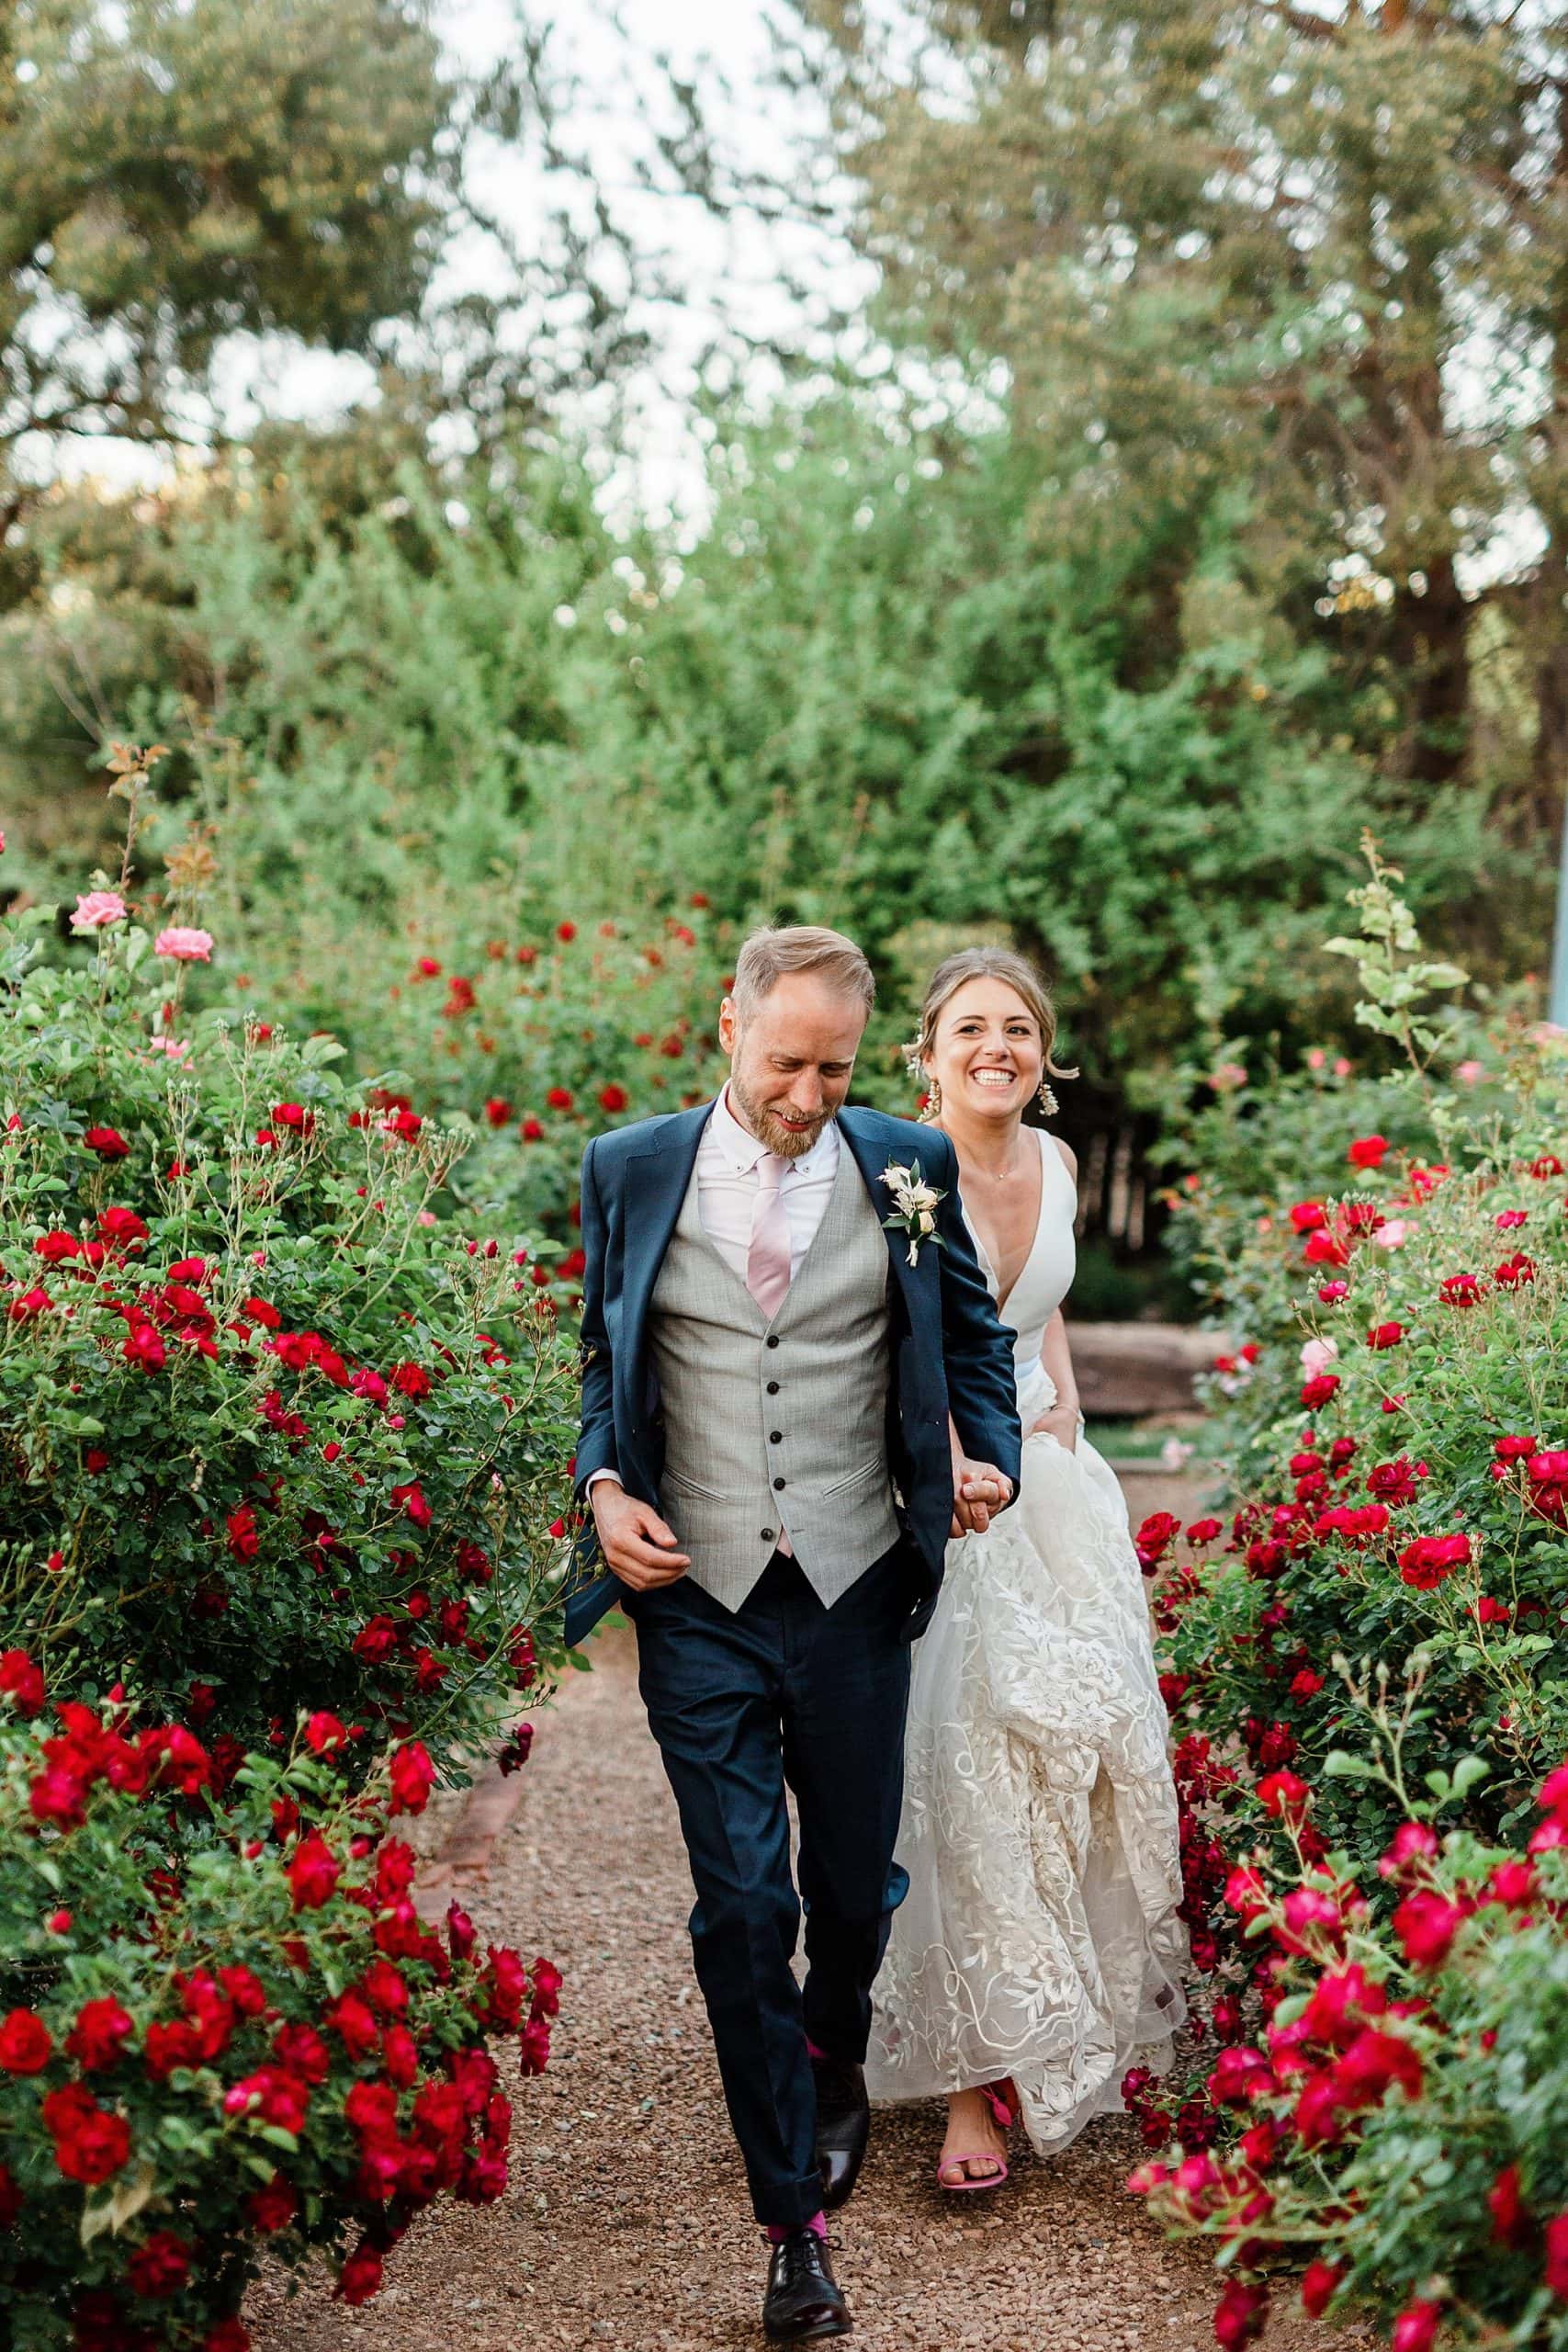 A couple runs through a rose garden in New Mexico for their elopement photos